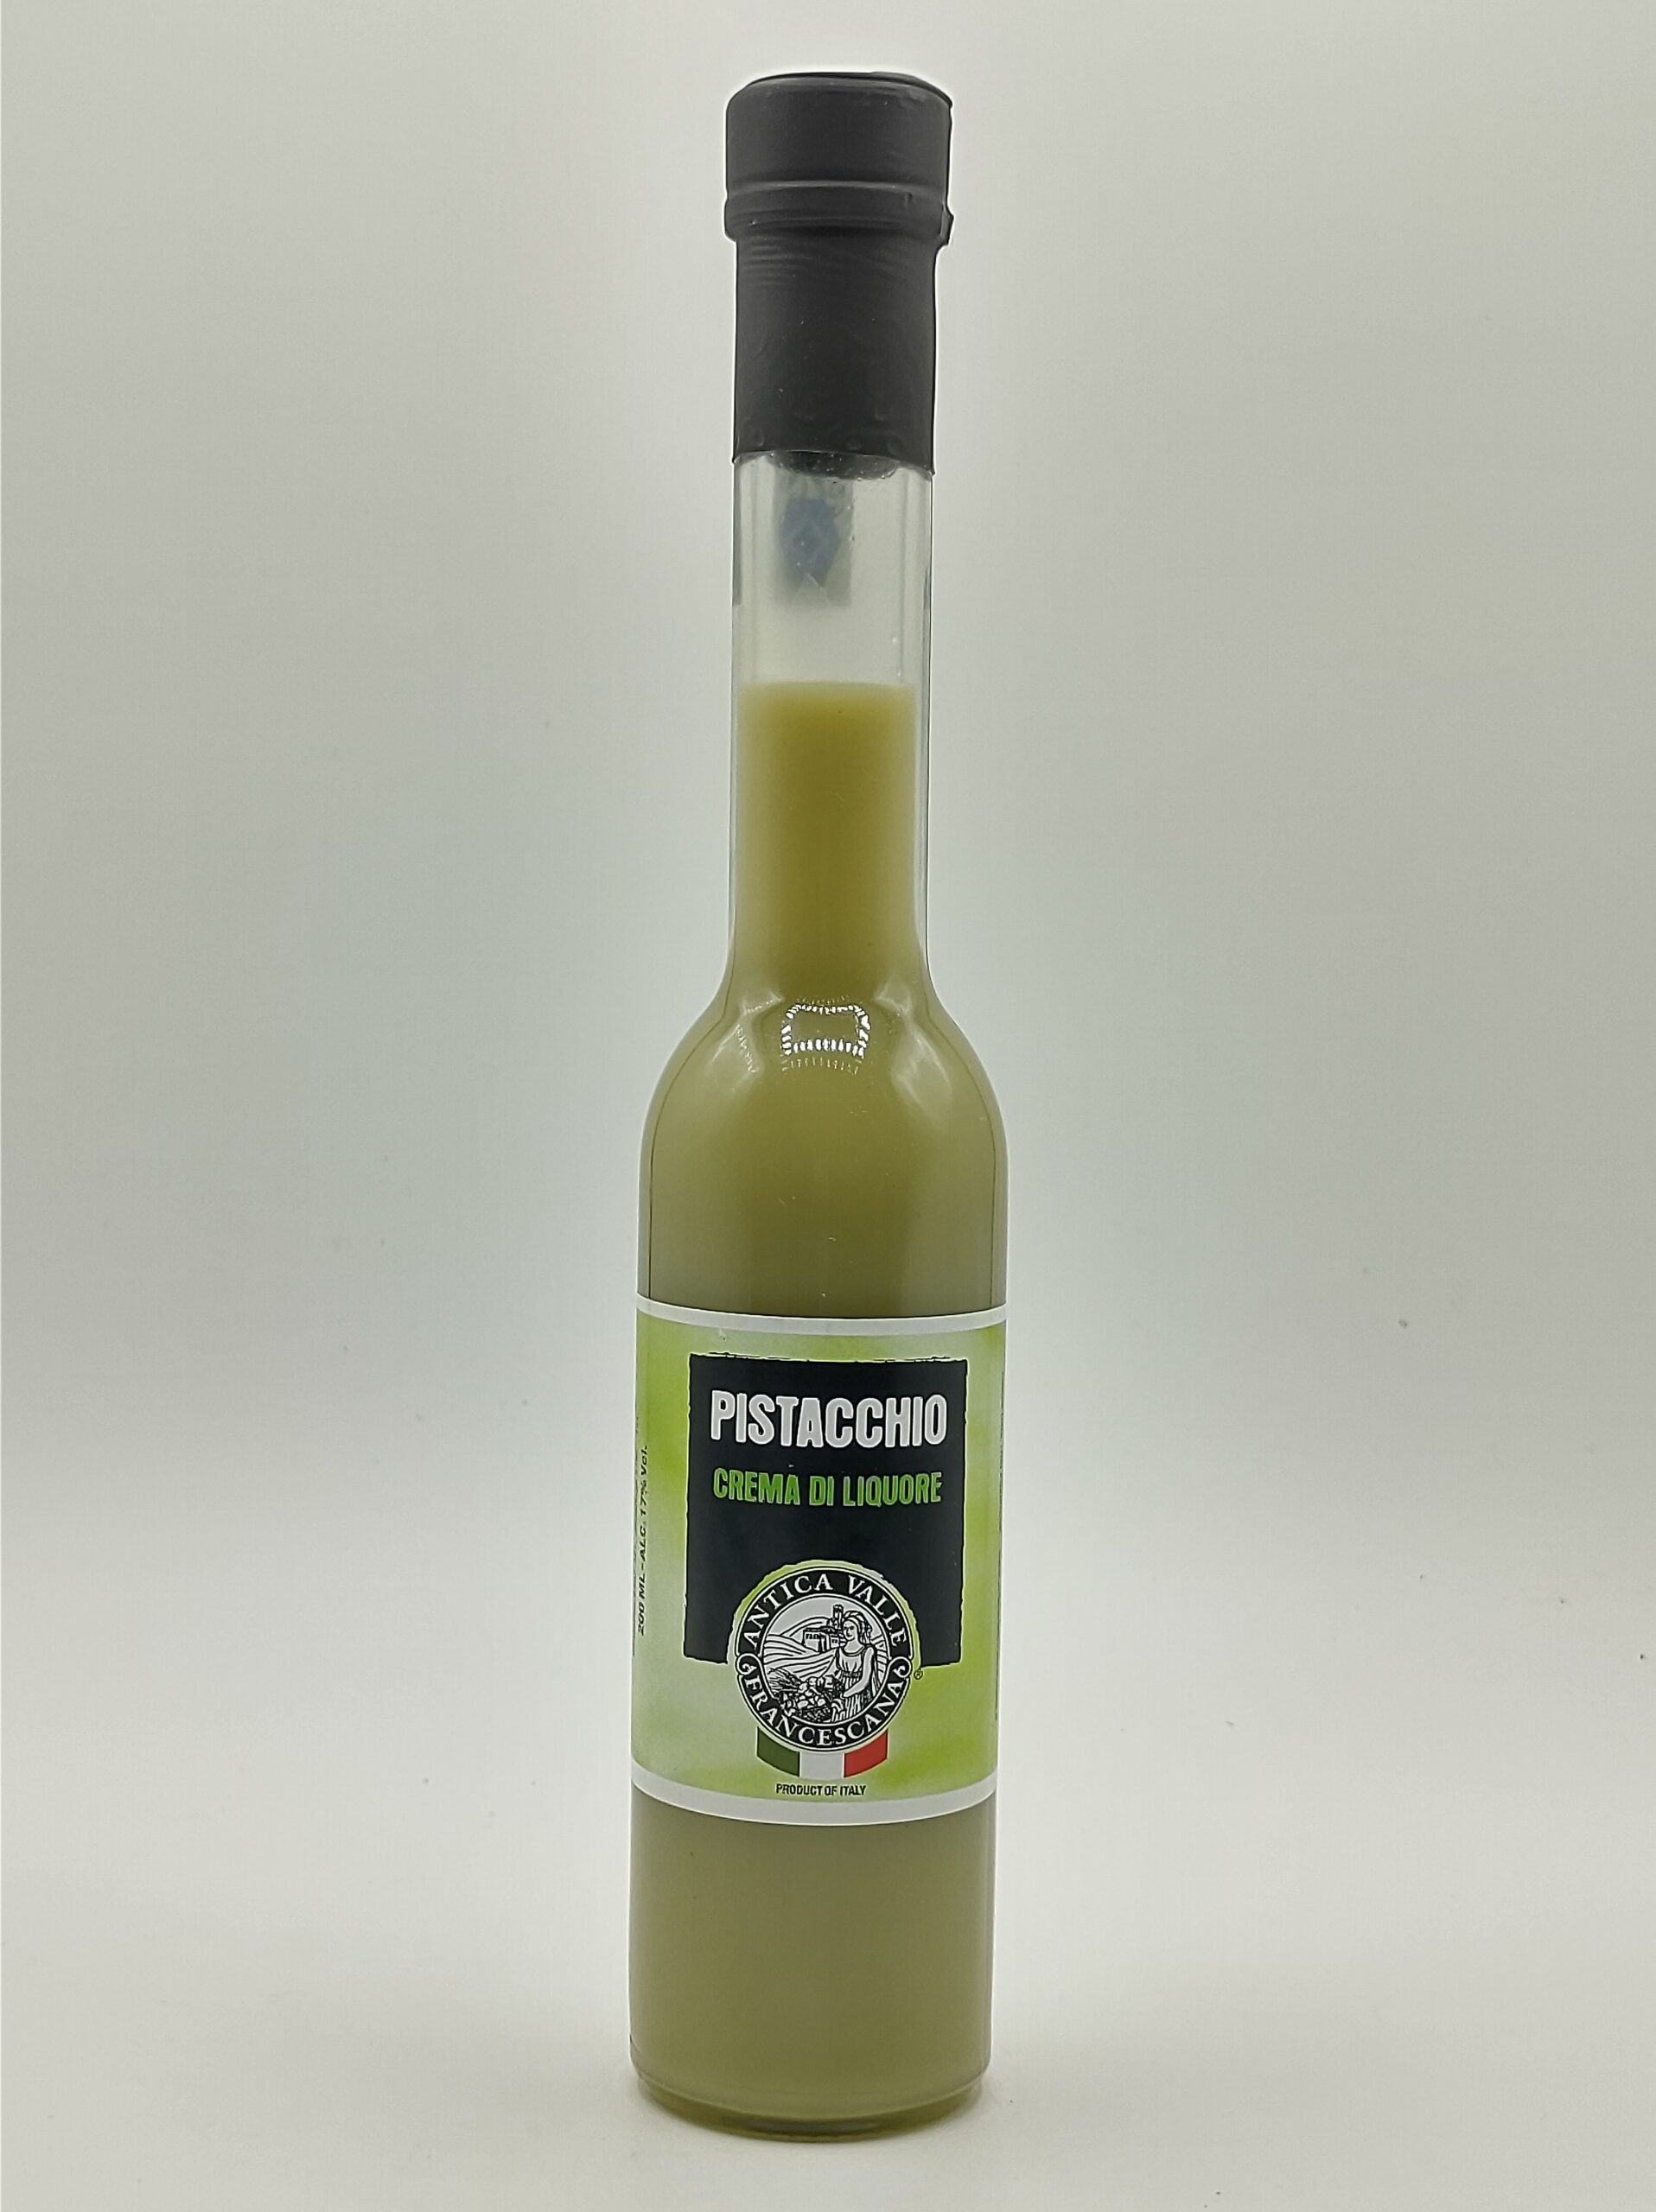 Pistachio-Cream liqueur – I Sapori dell'Umbria